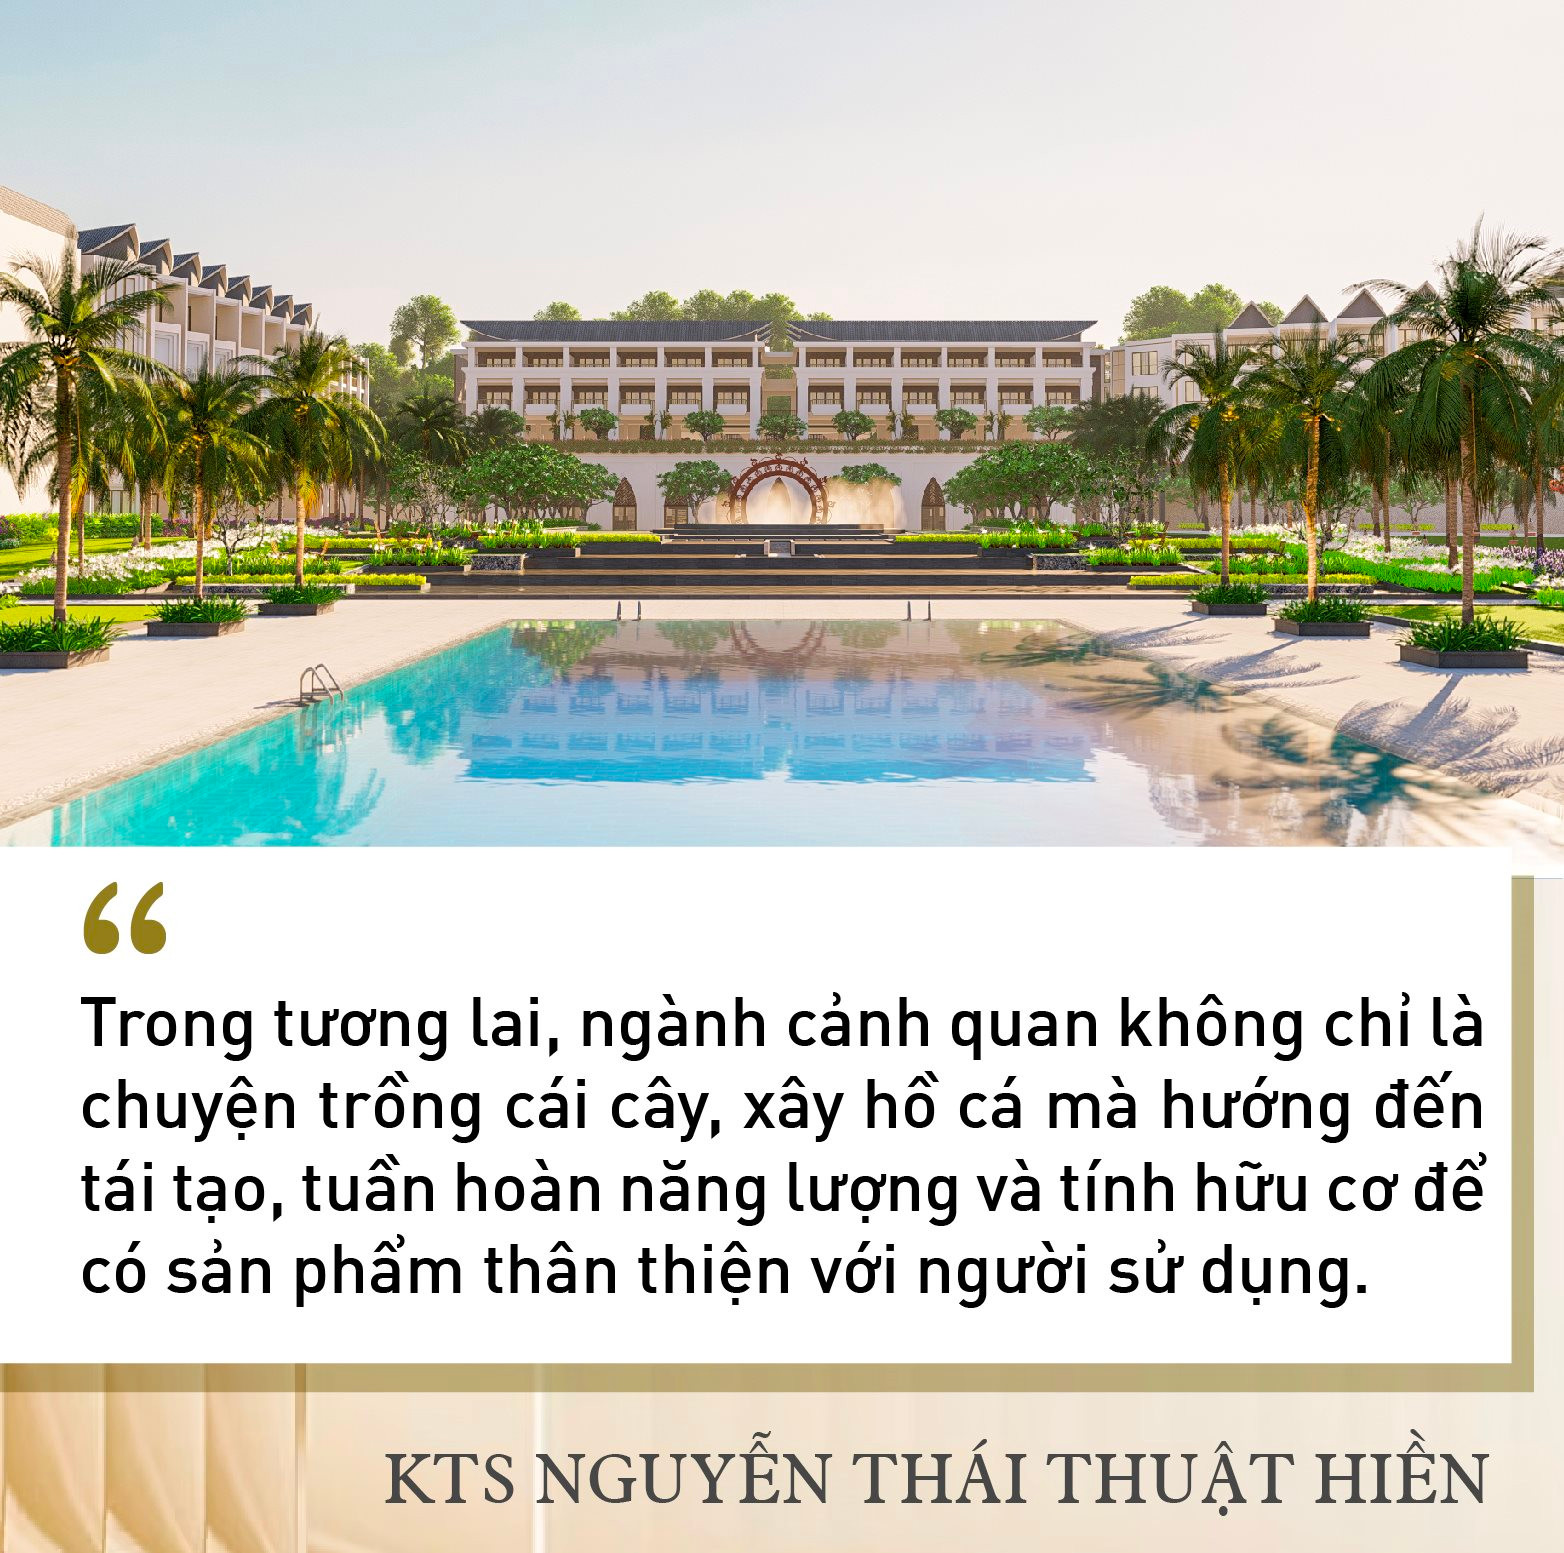 KTS Nguyễn Thái Thuật Hiền: Làm thiết kế cảnh quan như cho khách đeo đồng hồ Rolex, phải tiếp cận với người nhiều tiền mới sống được với nghề - Ảnh 8.